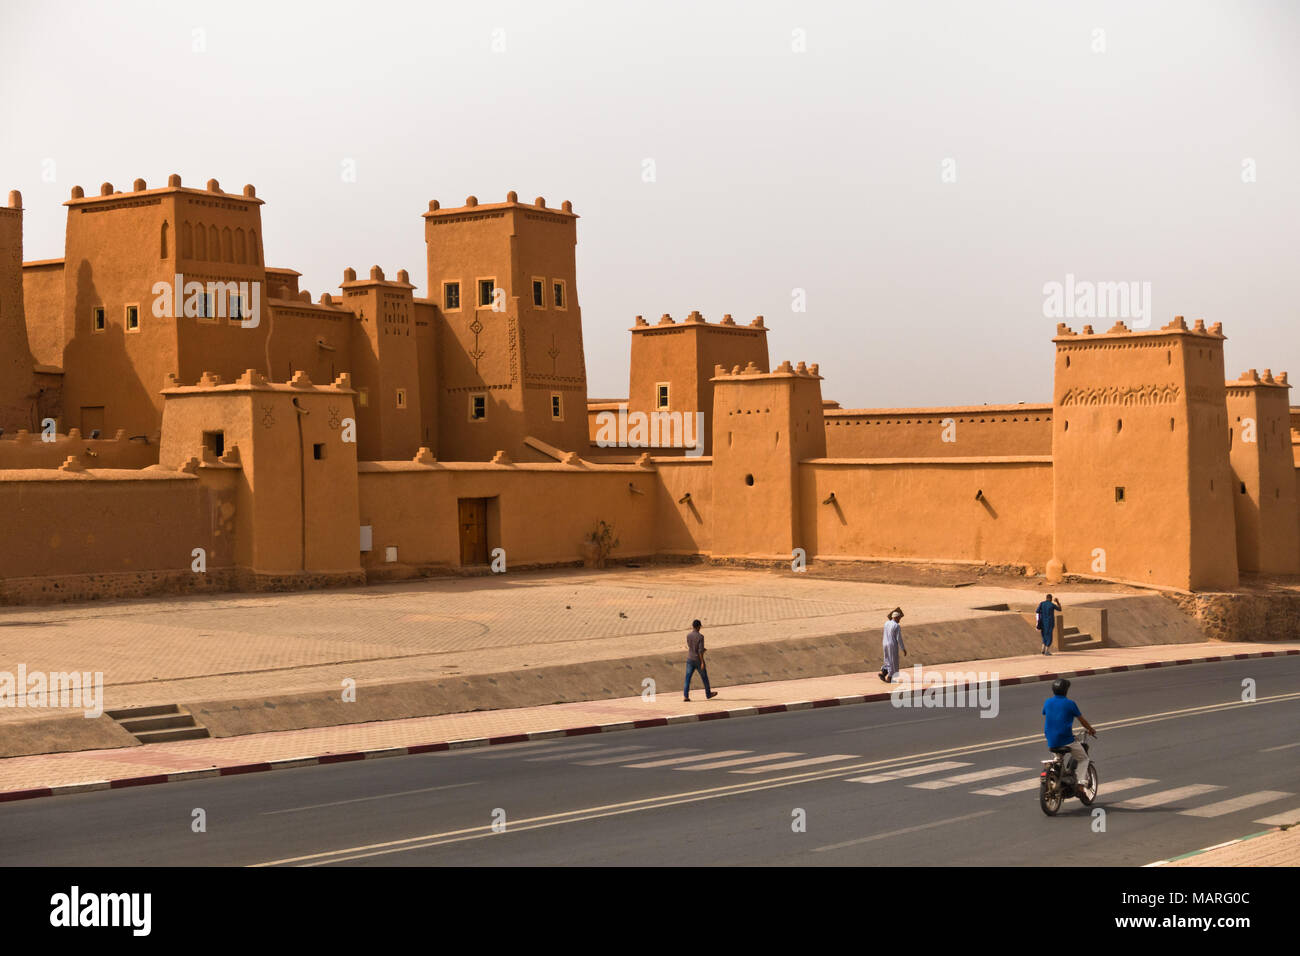 Les studios de cinéma de Hollywood marocain Ouarzazate au Maroc l'architecture Banque D'Images